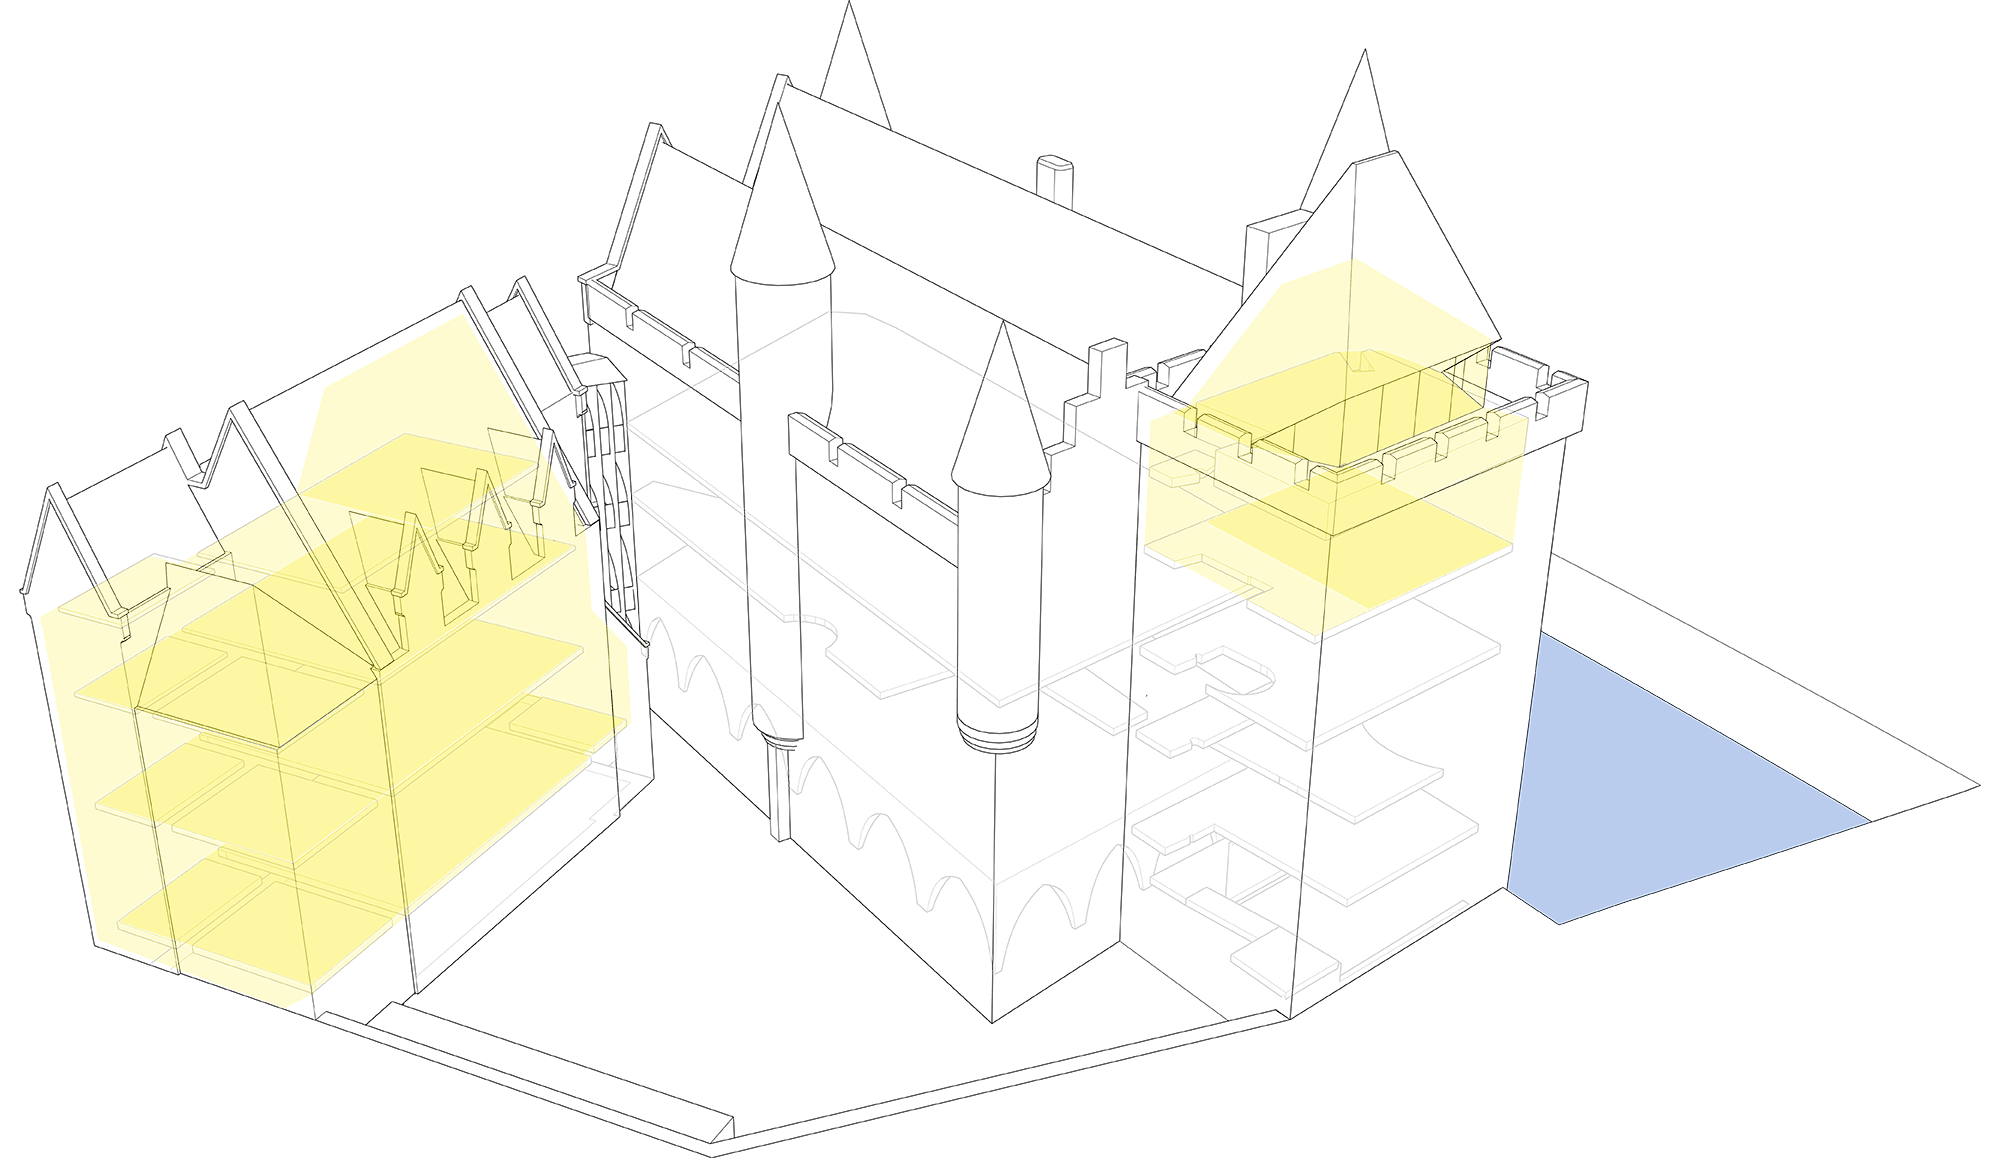 Isometrie 2: Wonen in het Duivelsteen (530 m2 - 20% van totale gebouw)